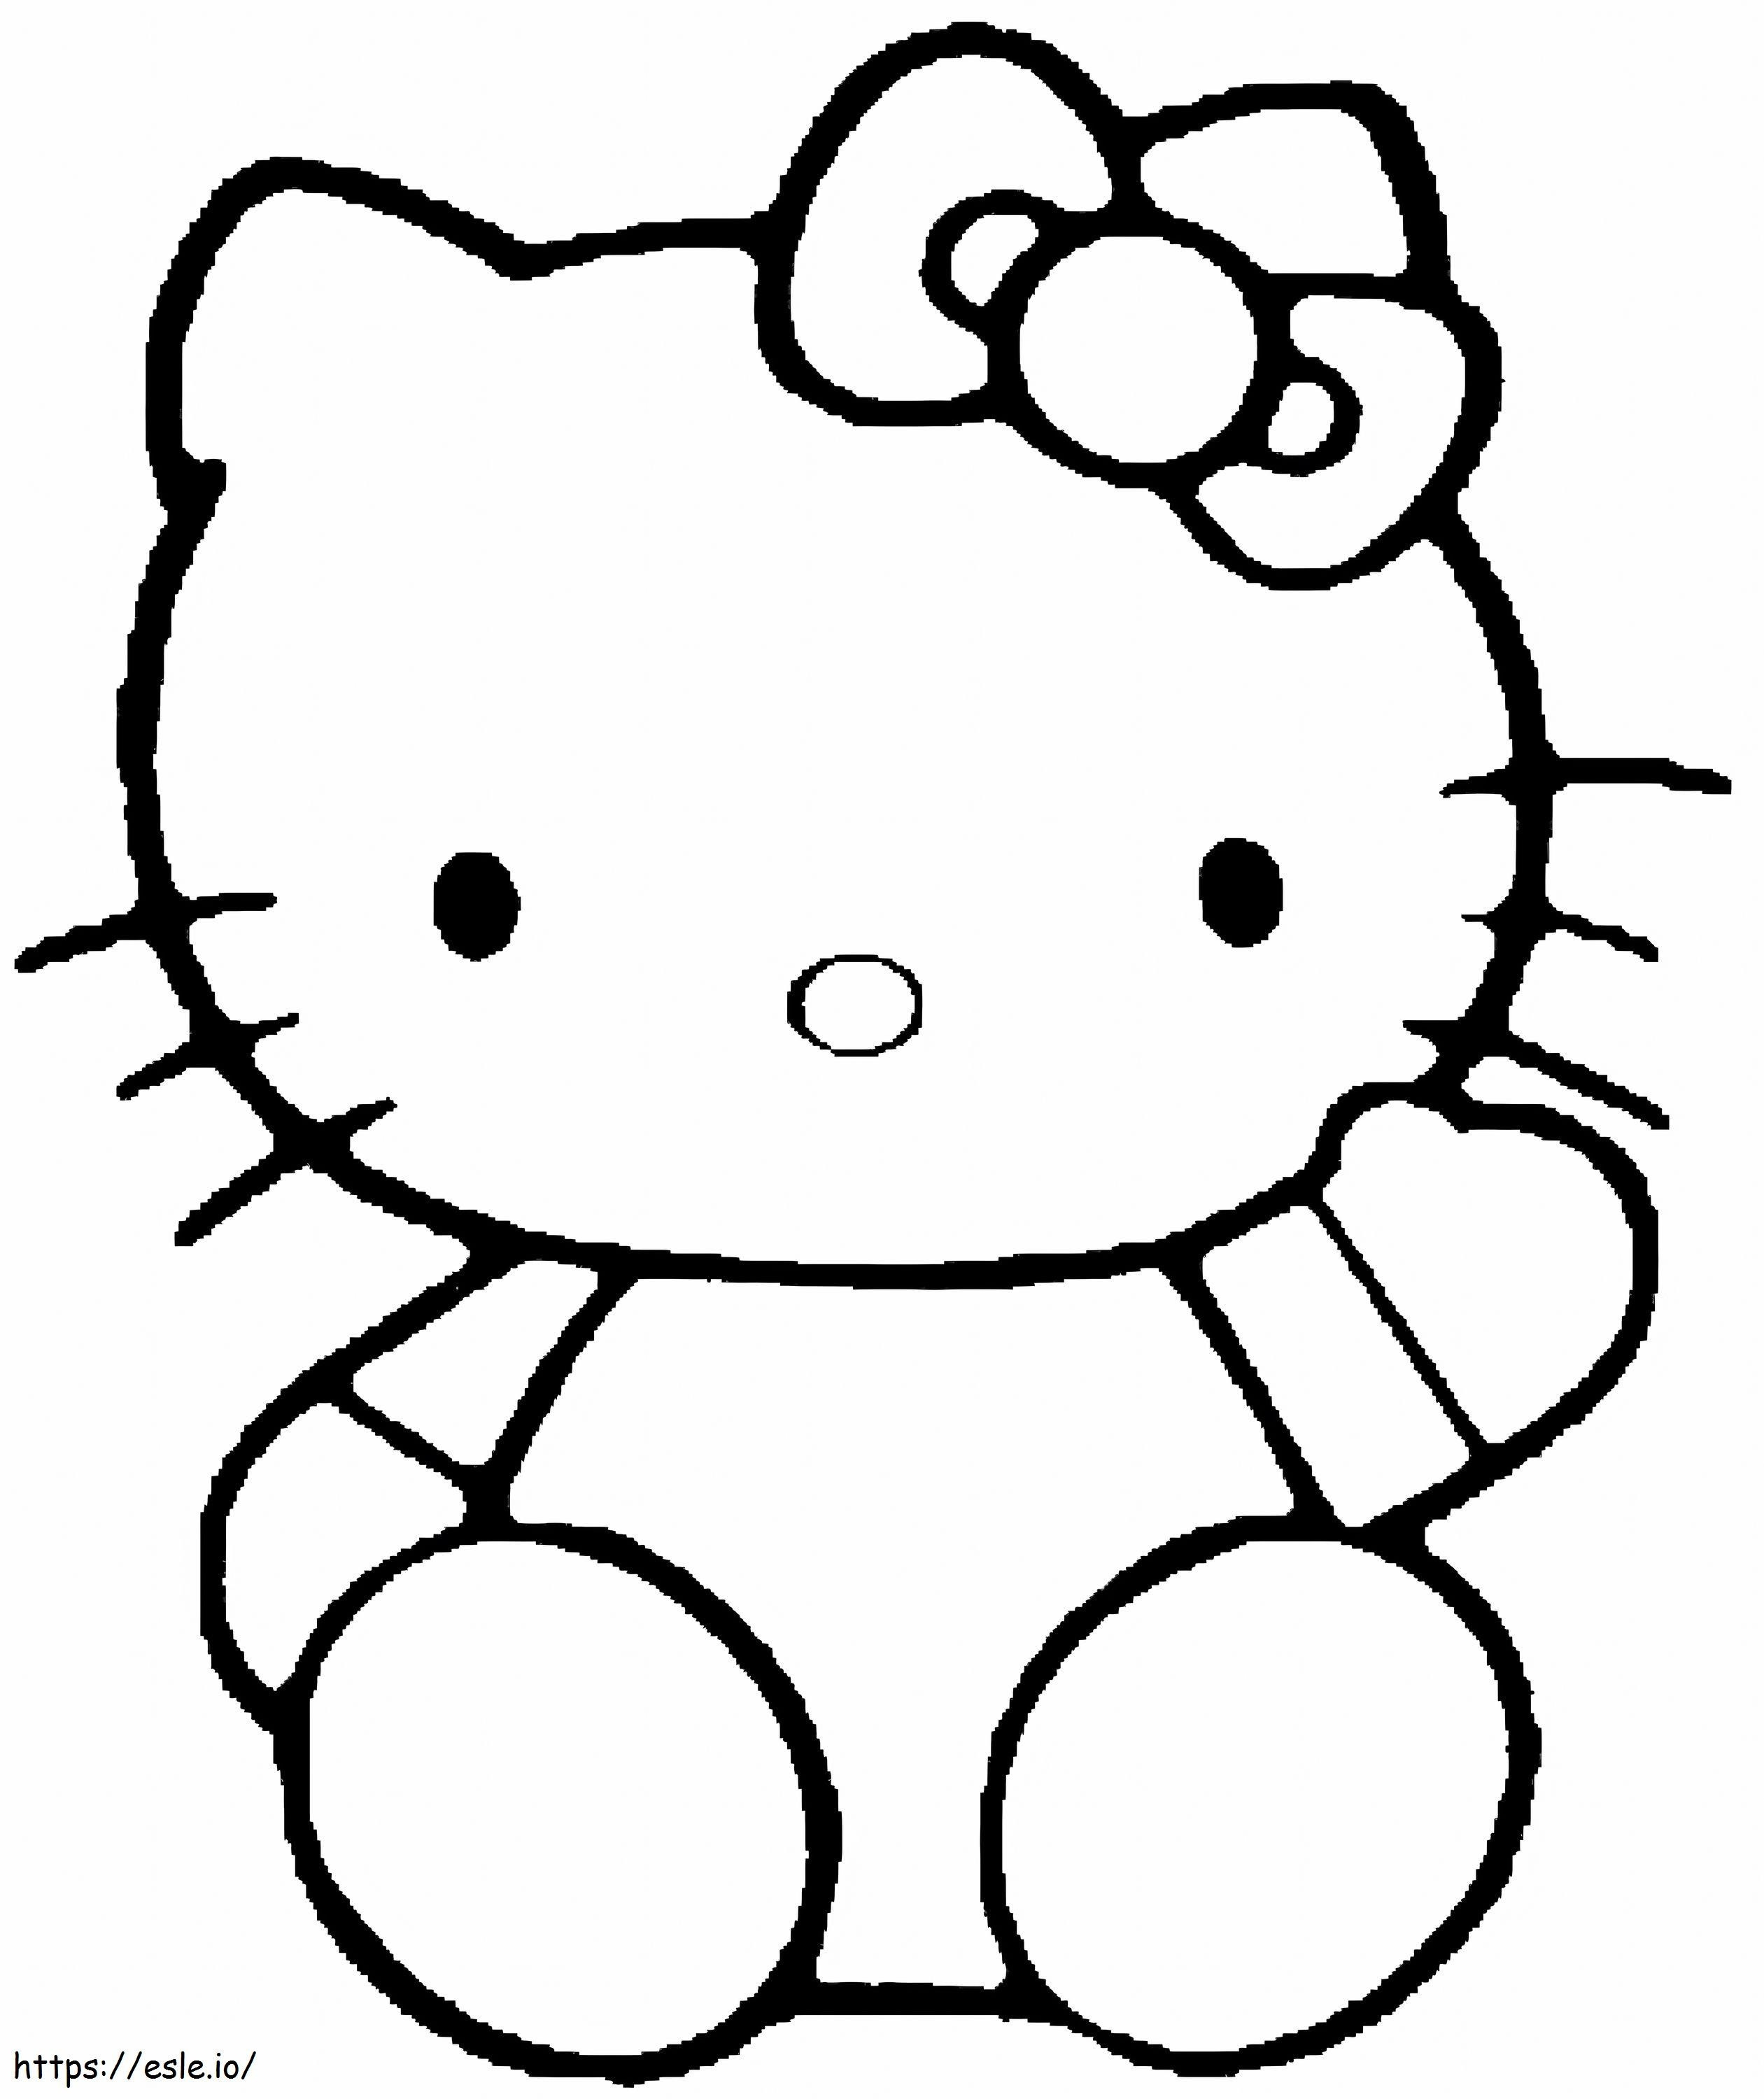 Coloriage Facile Hello Kitty assis à l'échelle à imprimer dessin